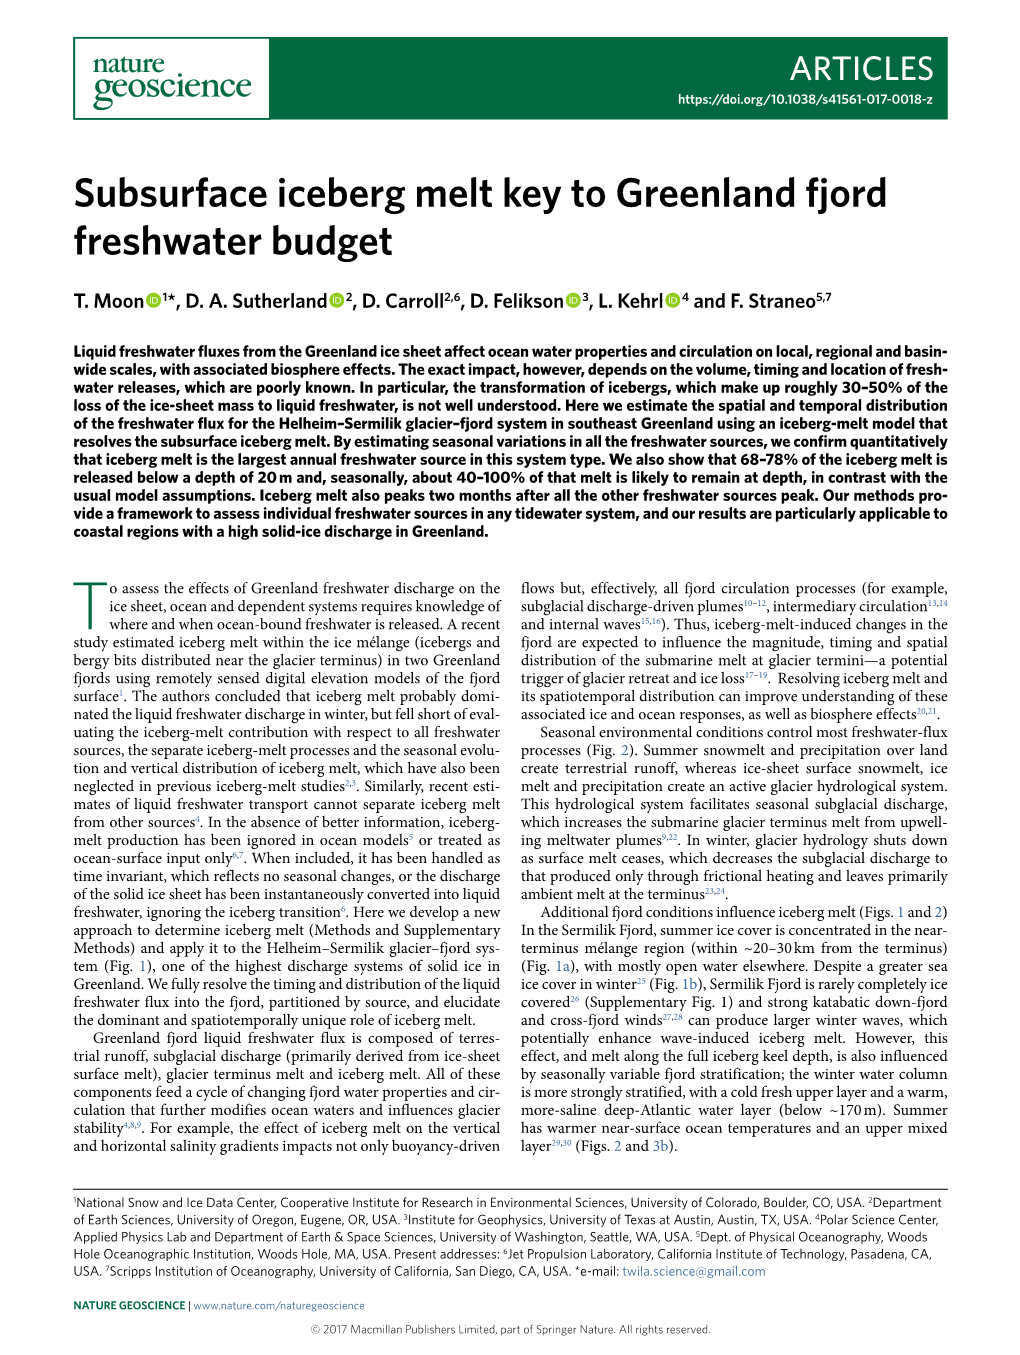 Subsurface Iceberg Melt Key to Greenland Fjord Freshwater Budget